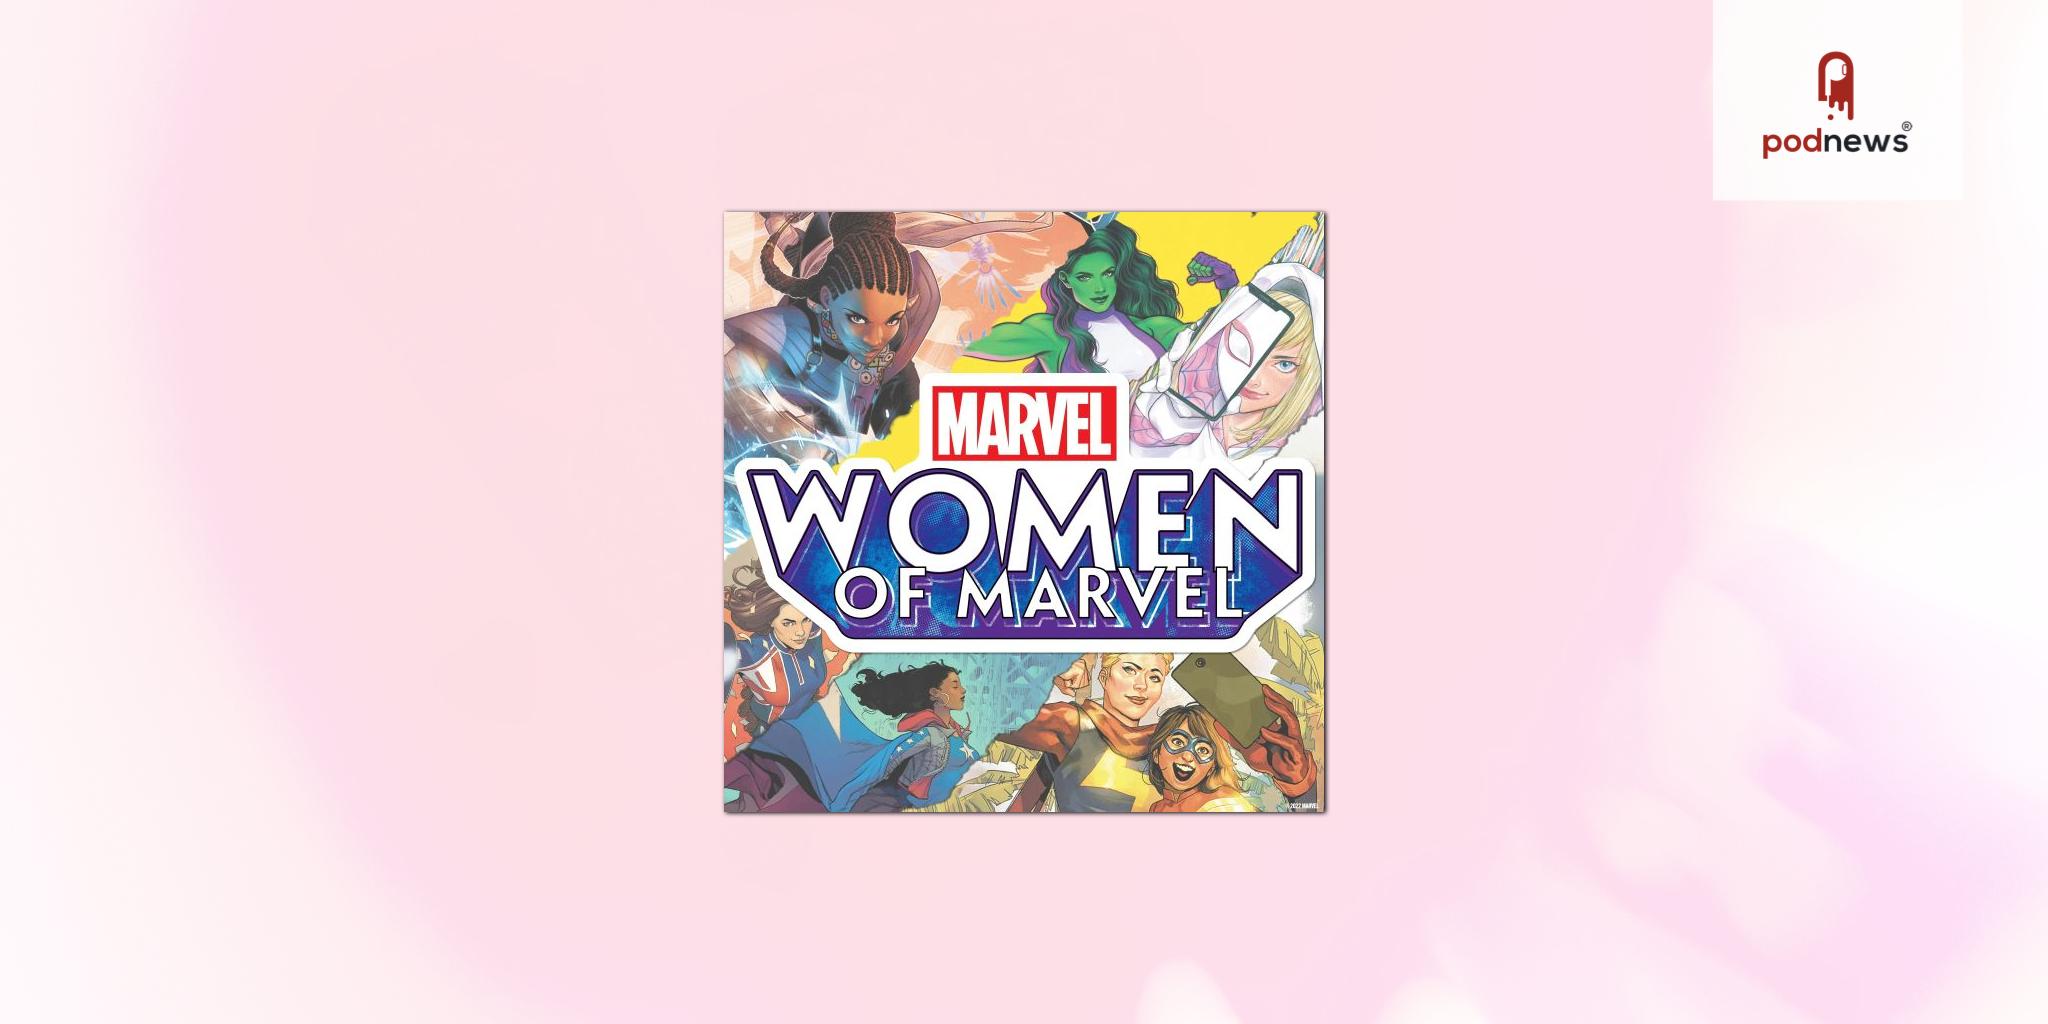 Marvel Entertainment's original podcast series 'Women of Marvel' returns